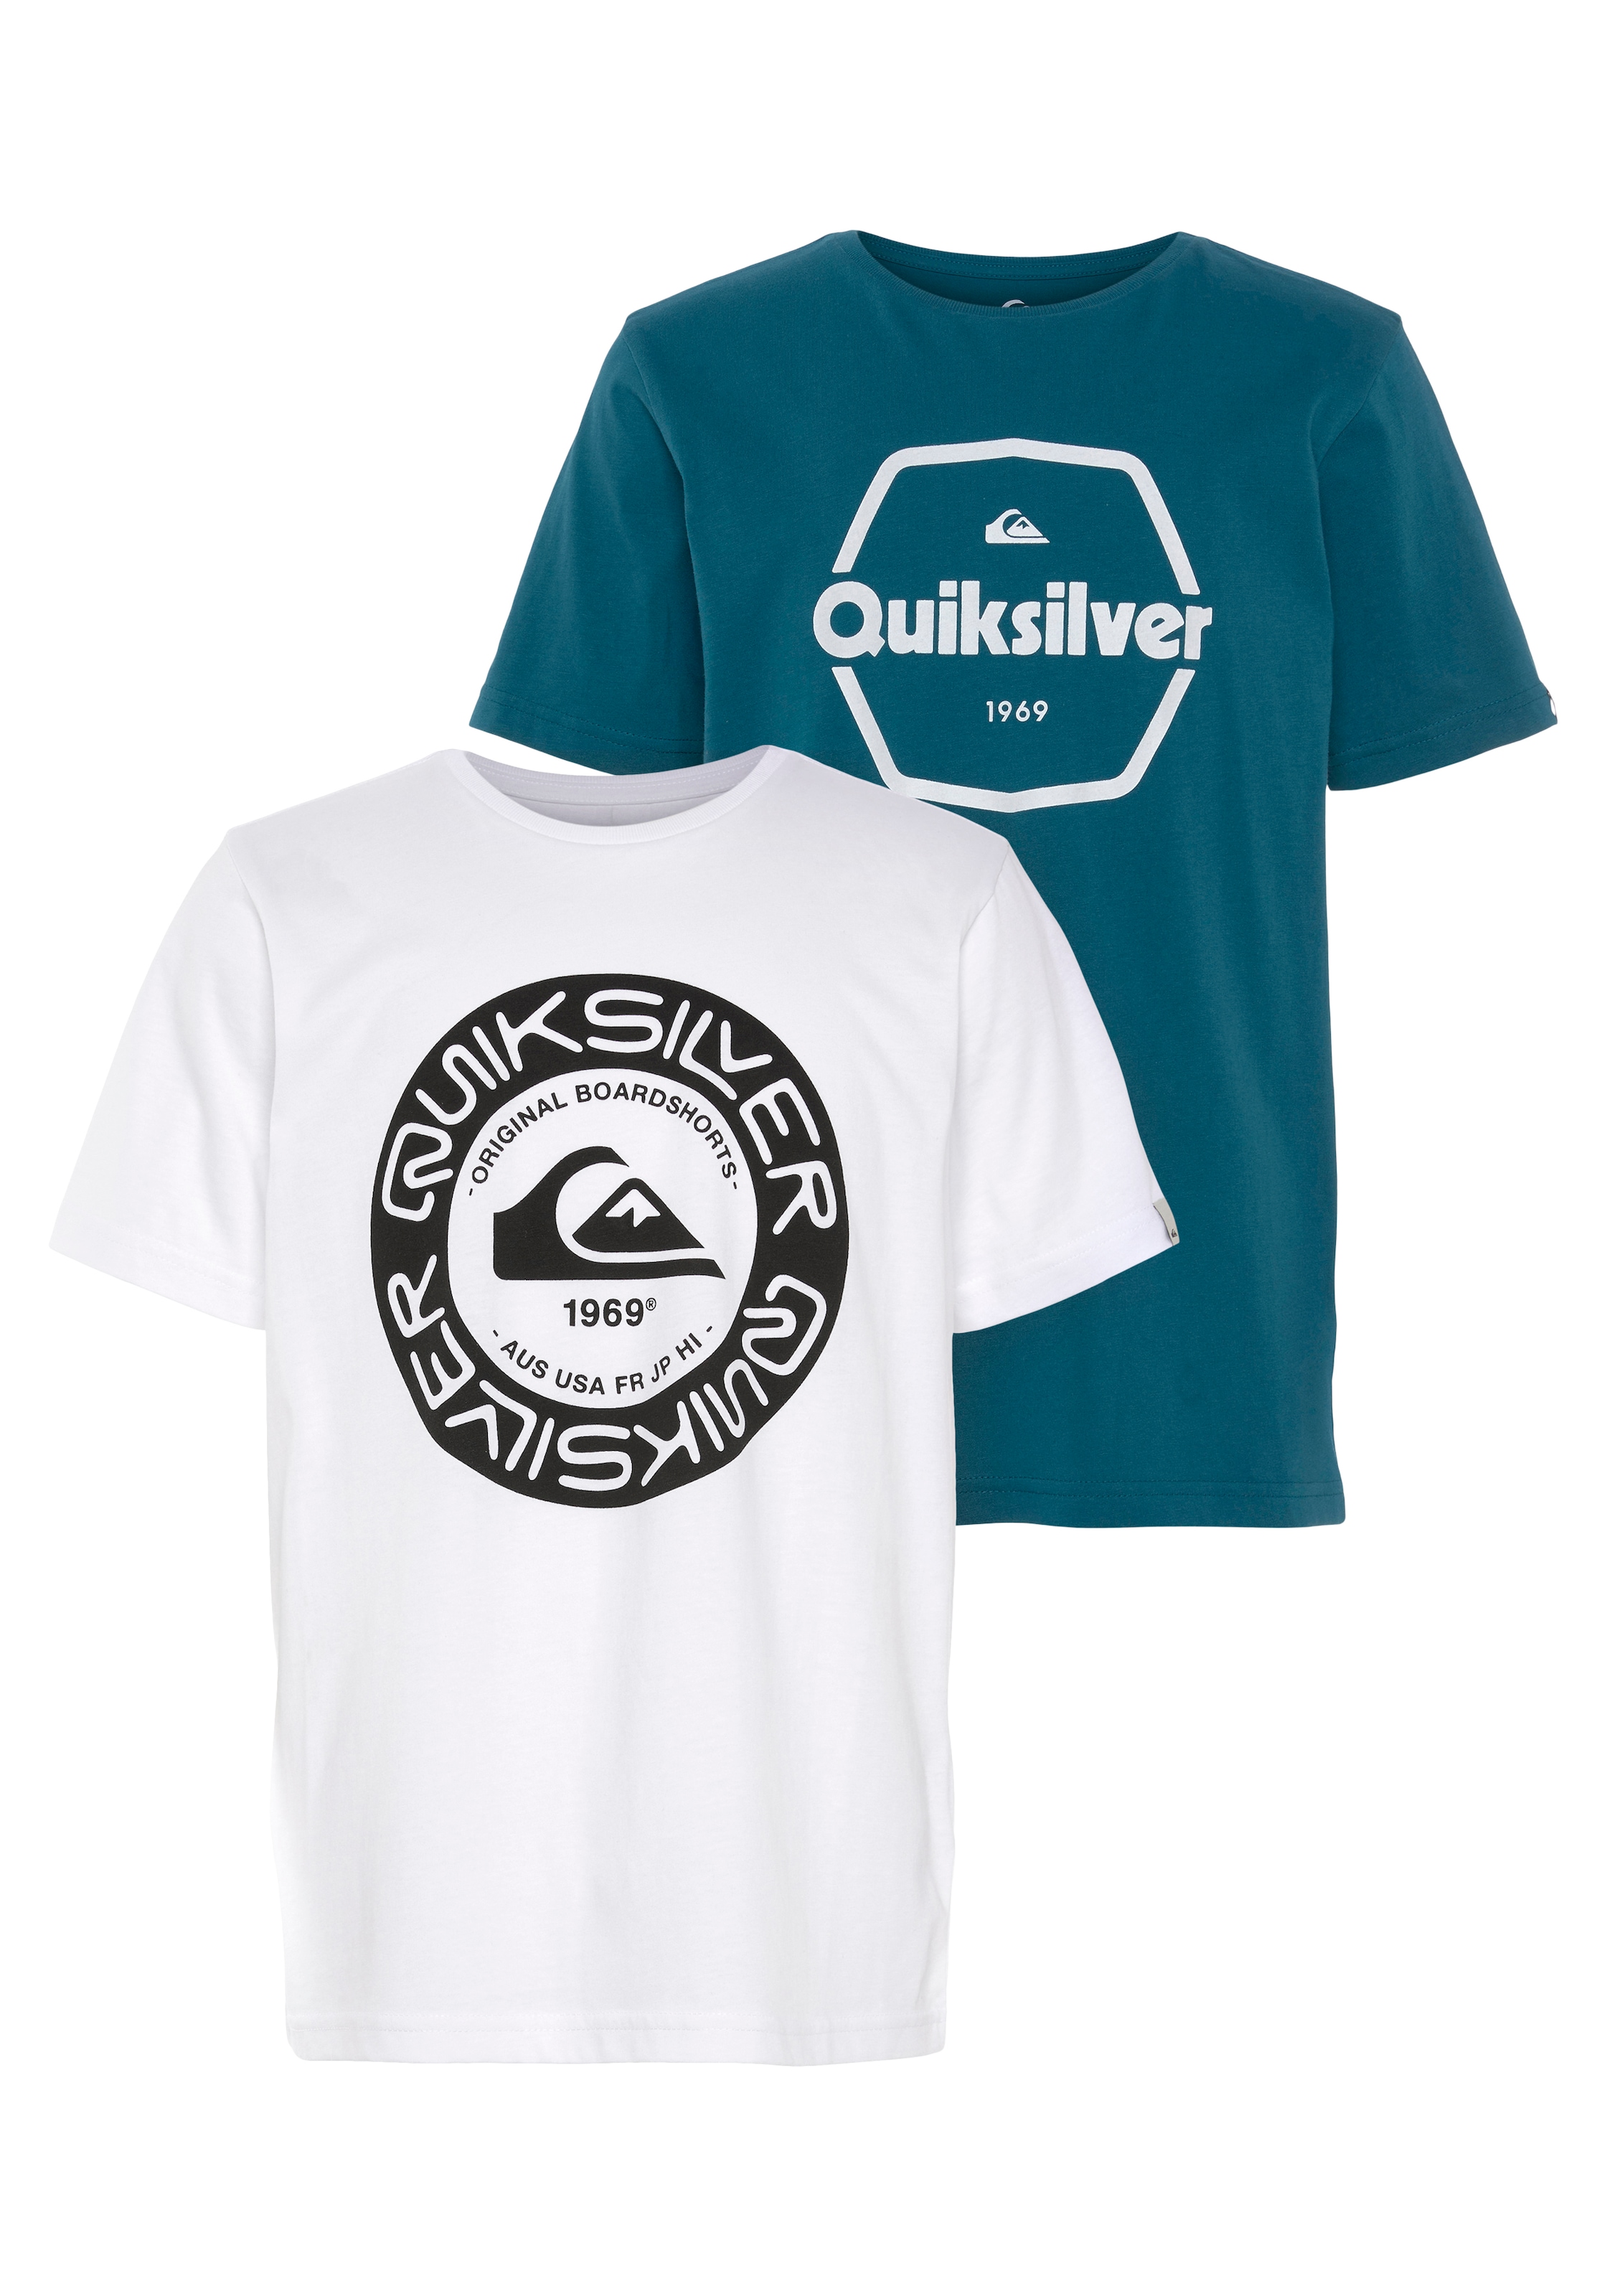 Quiksilver online kaufen bei OTTO